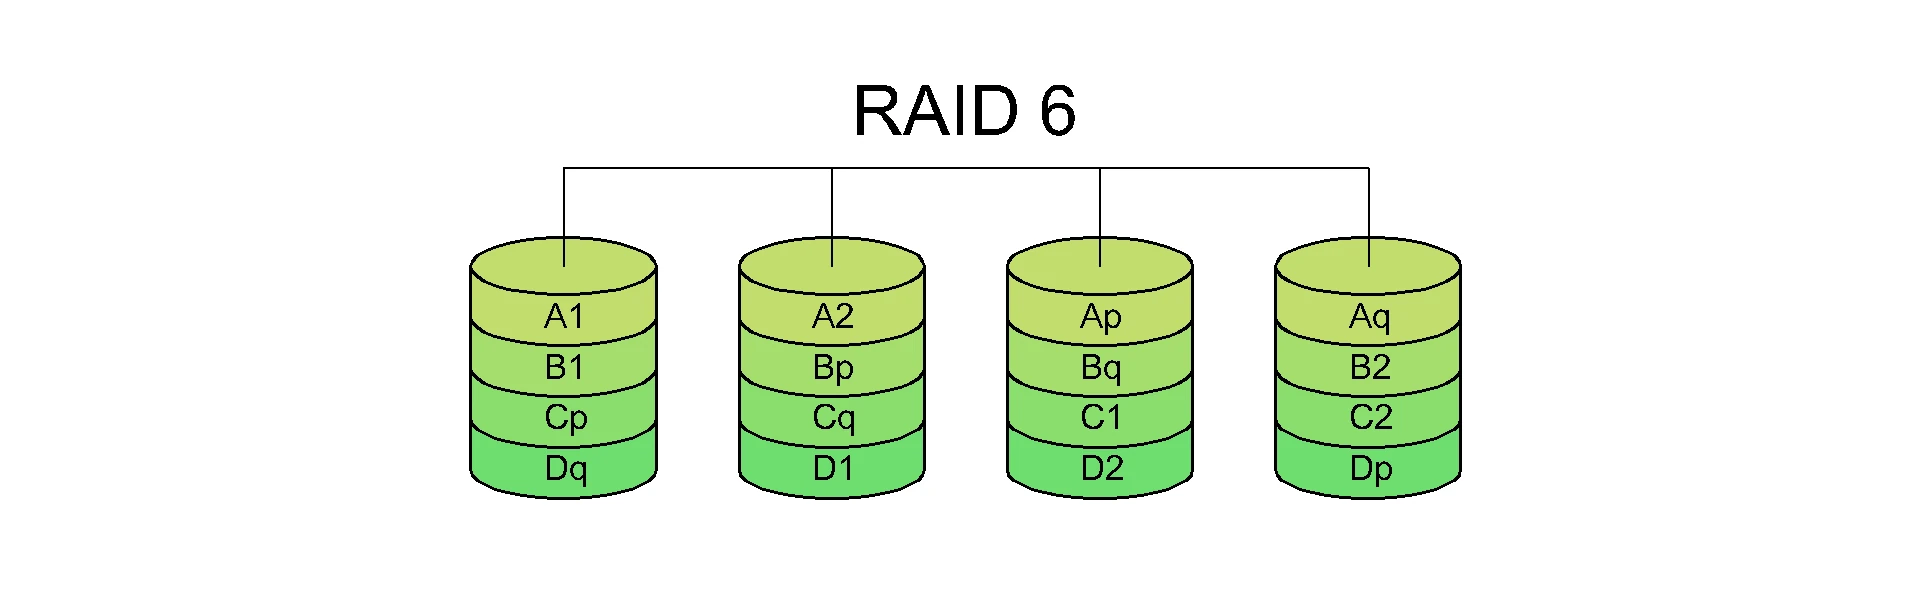 raid-6-recupero-dati